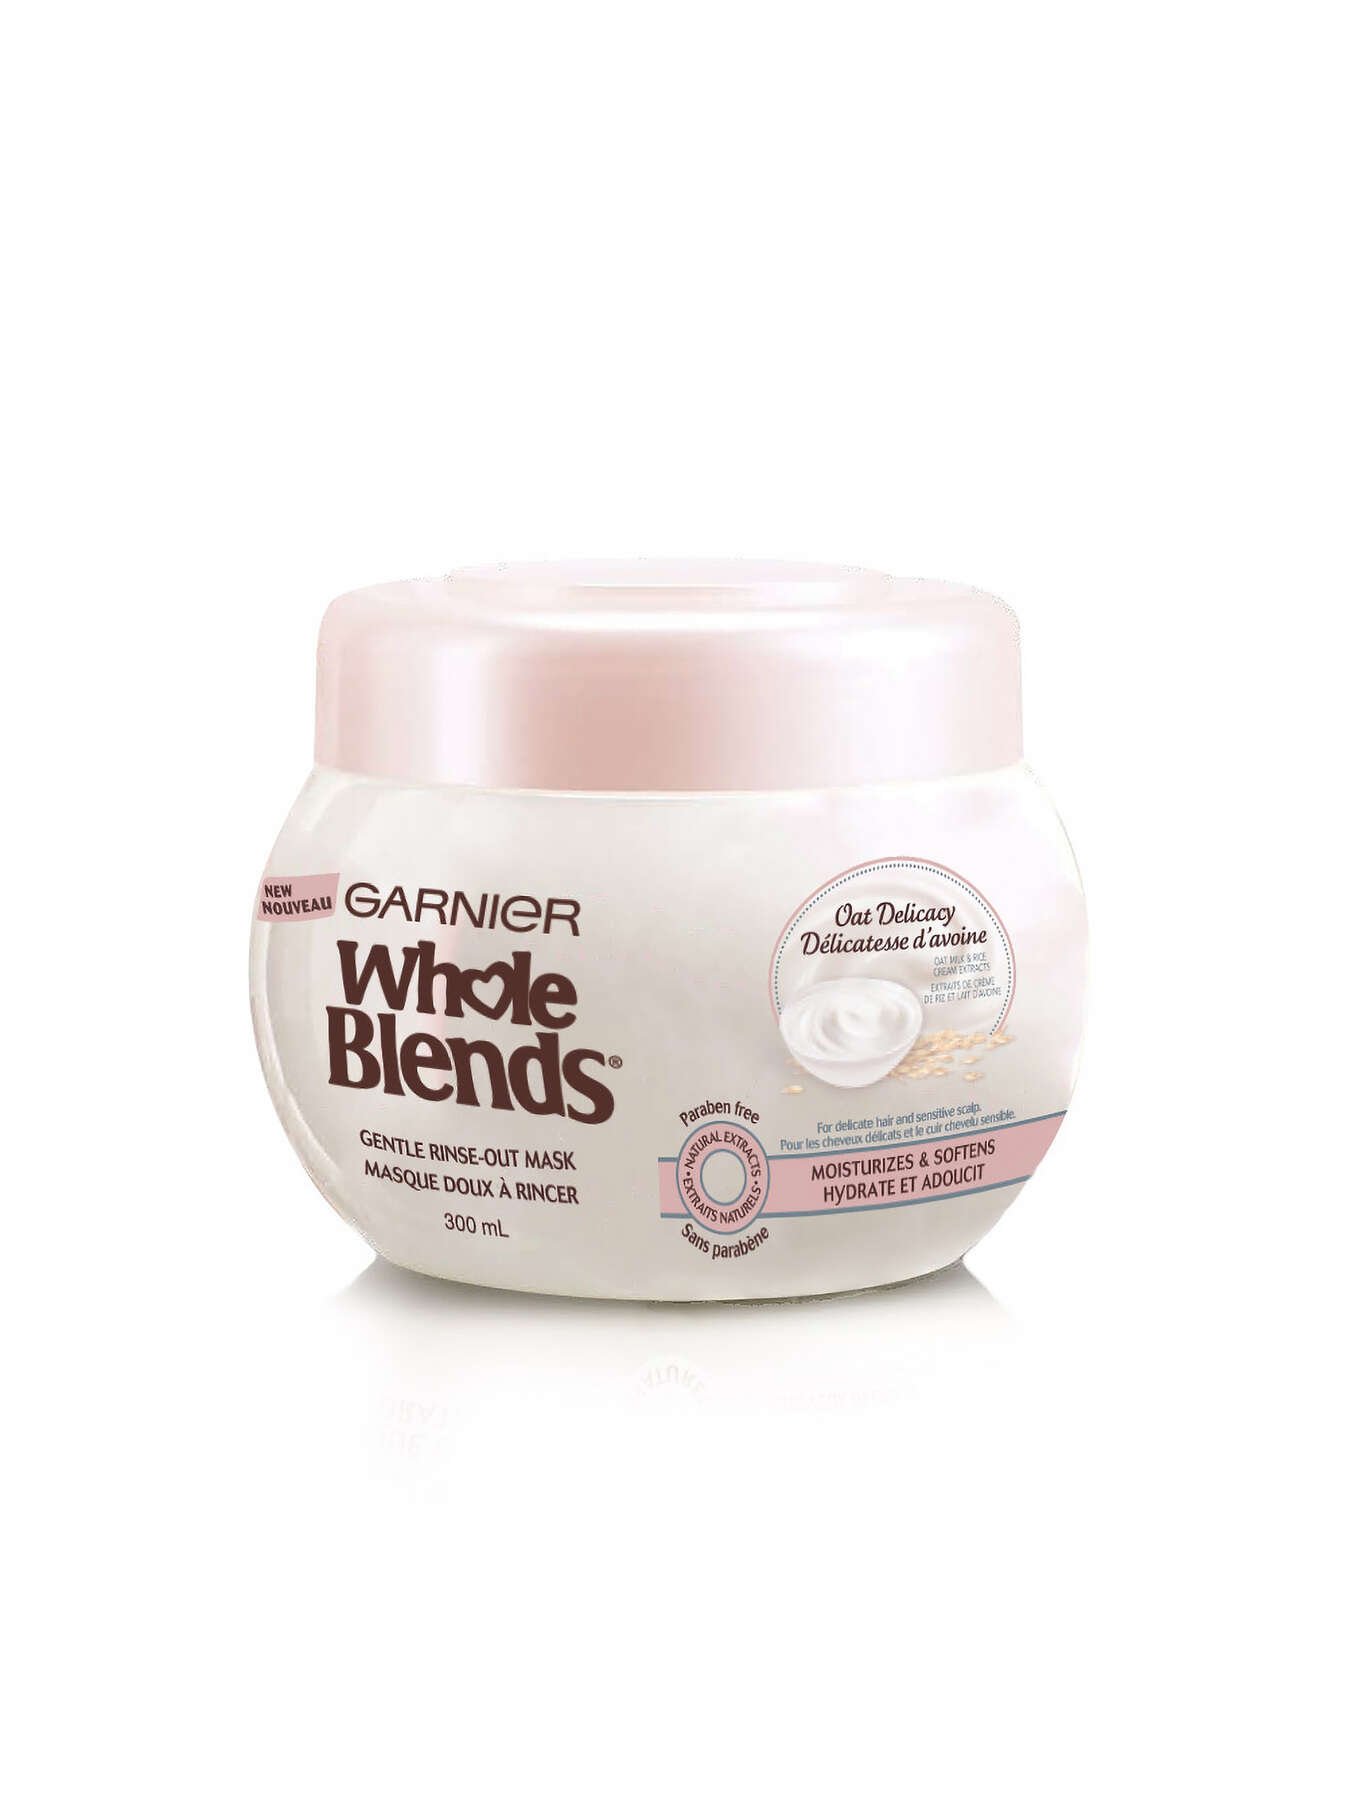 garnier hair mask whole blends oat delicacy 300 ml 3600542182560 t1